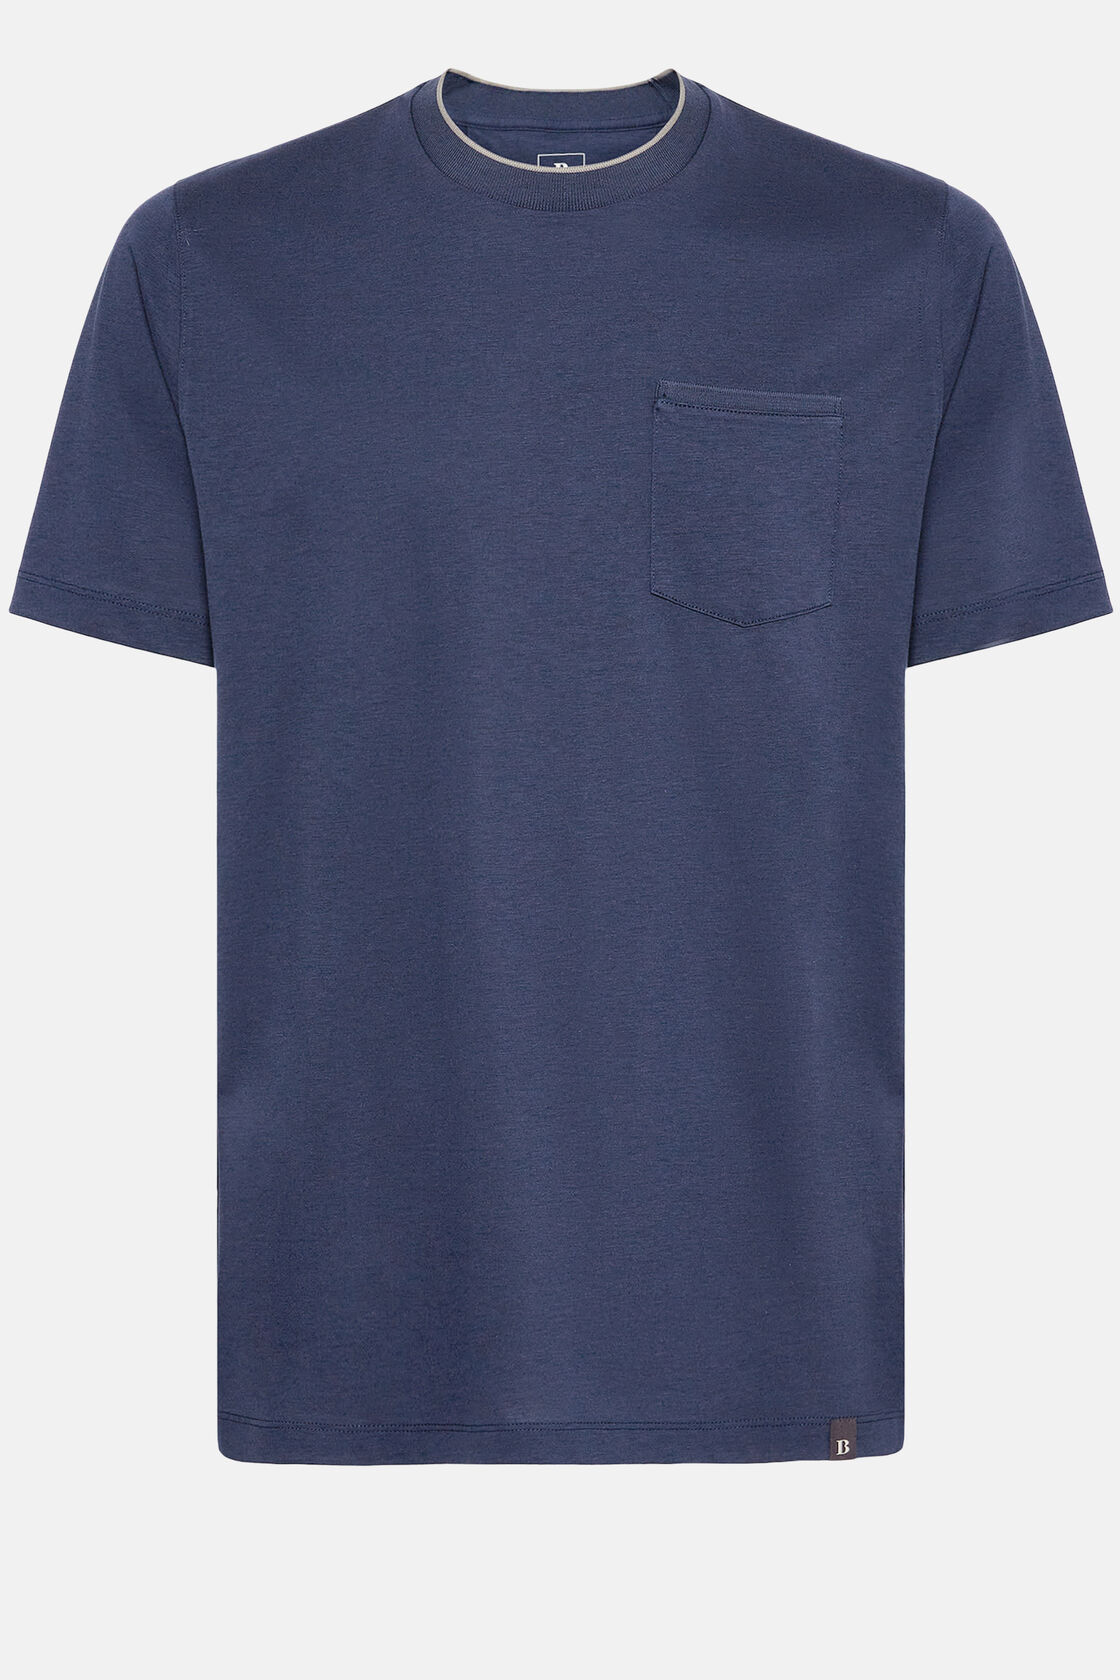 T-shirt in katoen en tencel jersey, Navy blue, hi-res